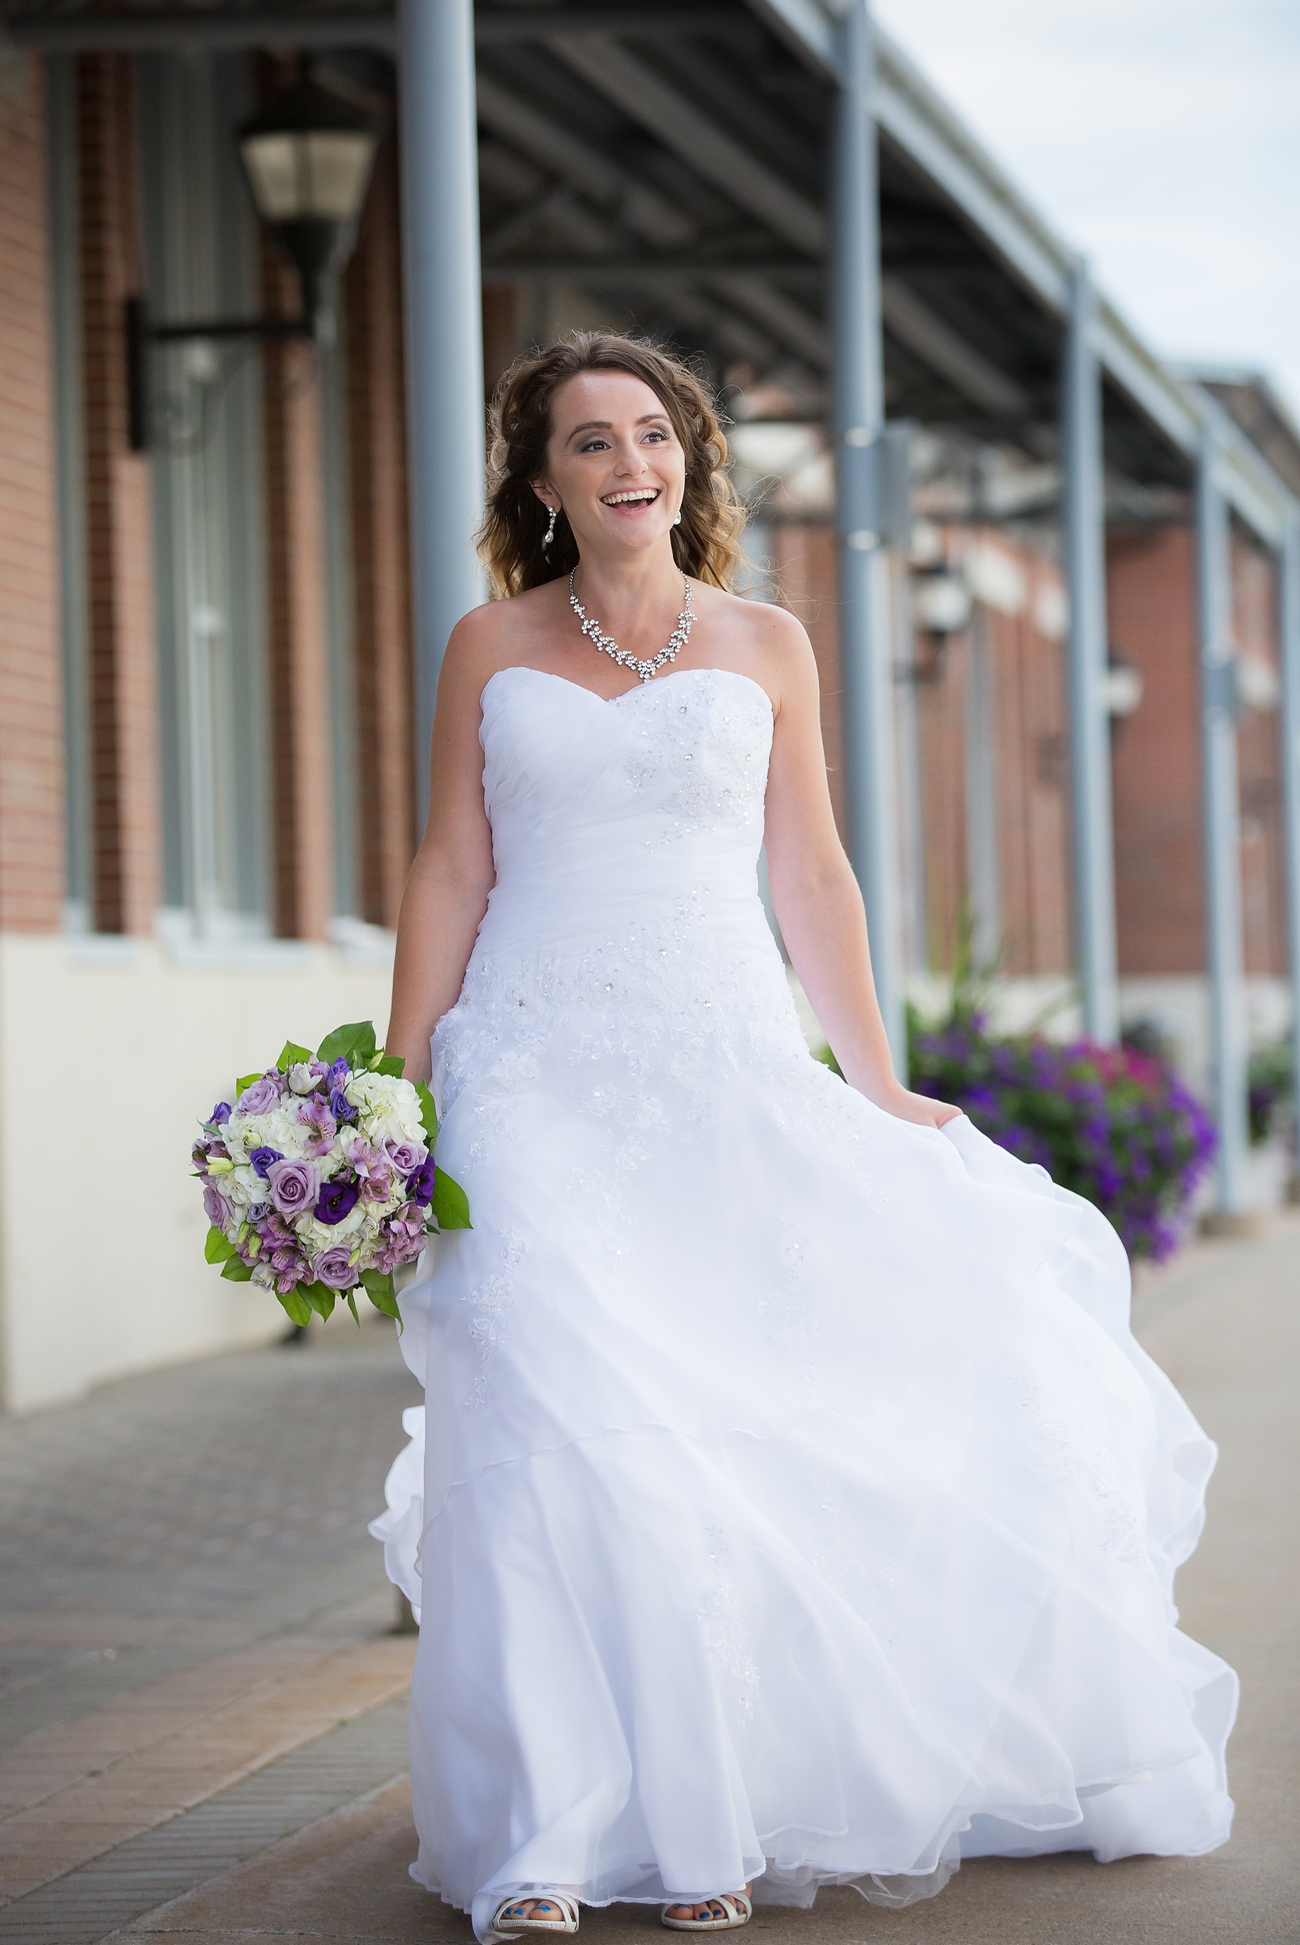 Peir 21 Wedding Photographer Halifax Nova Scotia Bride